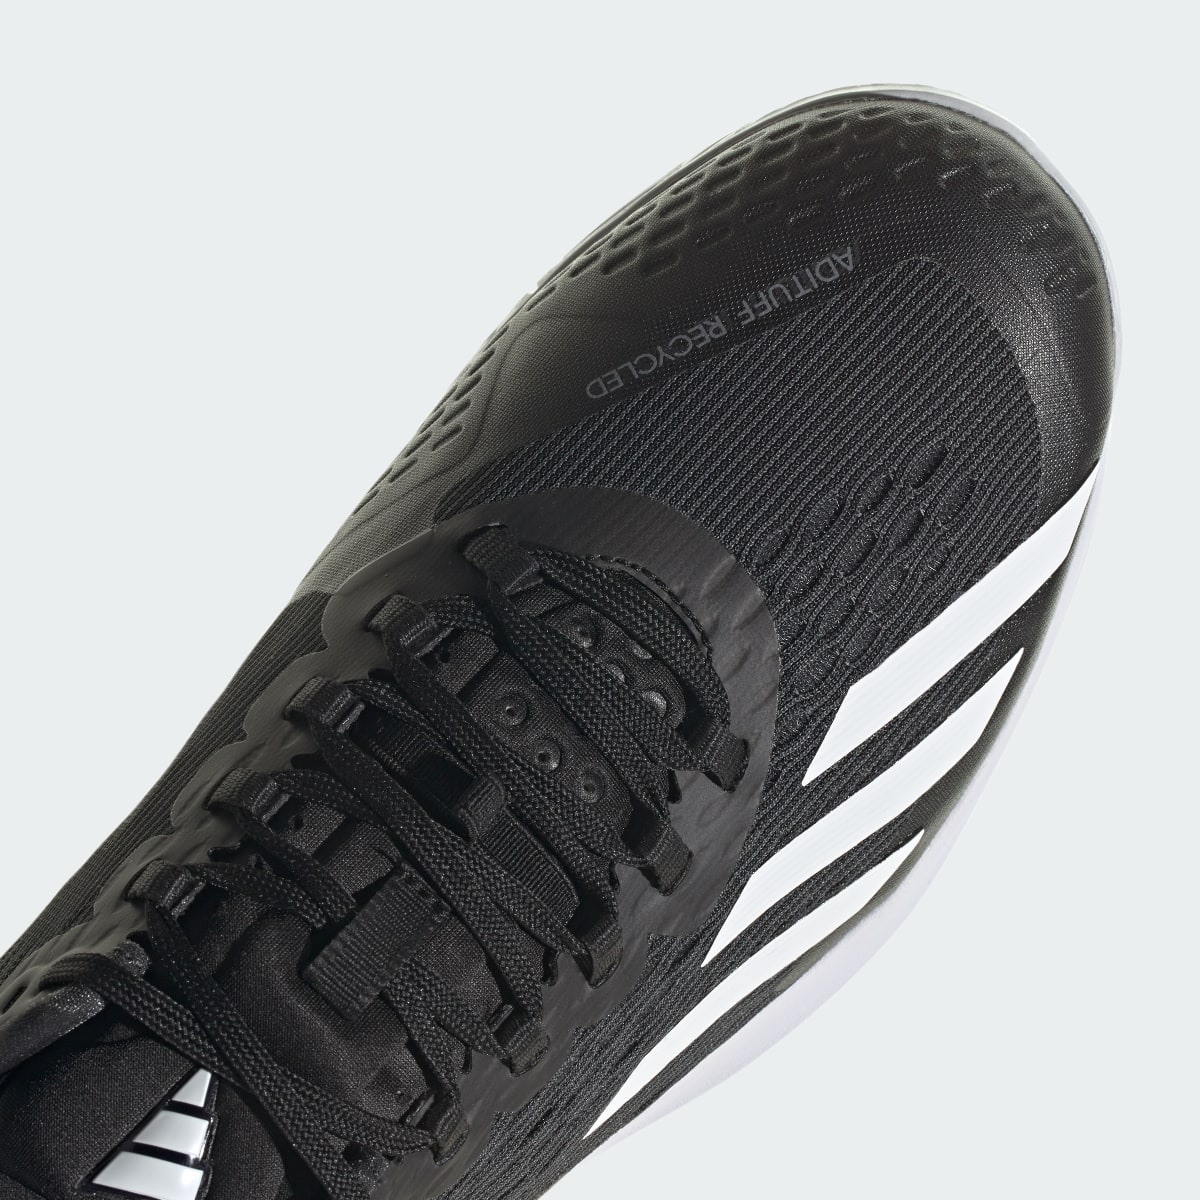 Adidas Adizero Cybersonic Tennis Shoes. 8